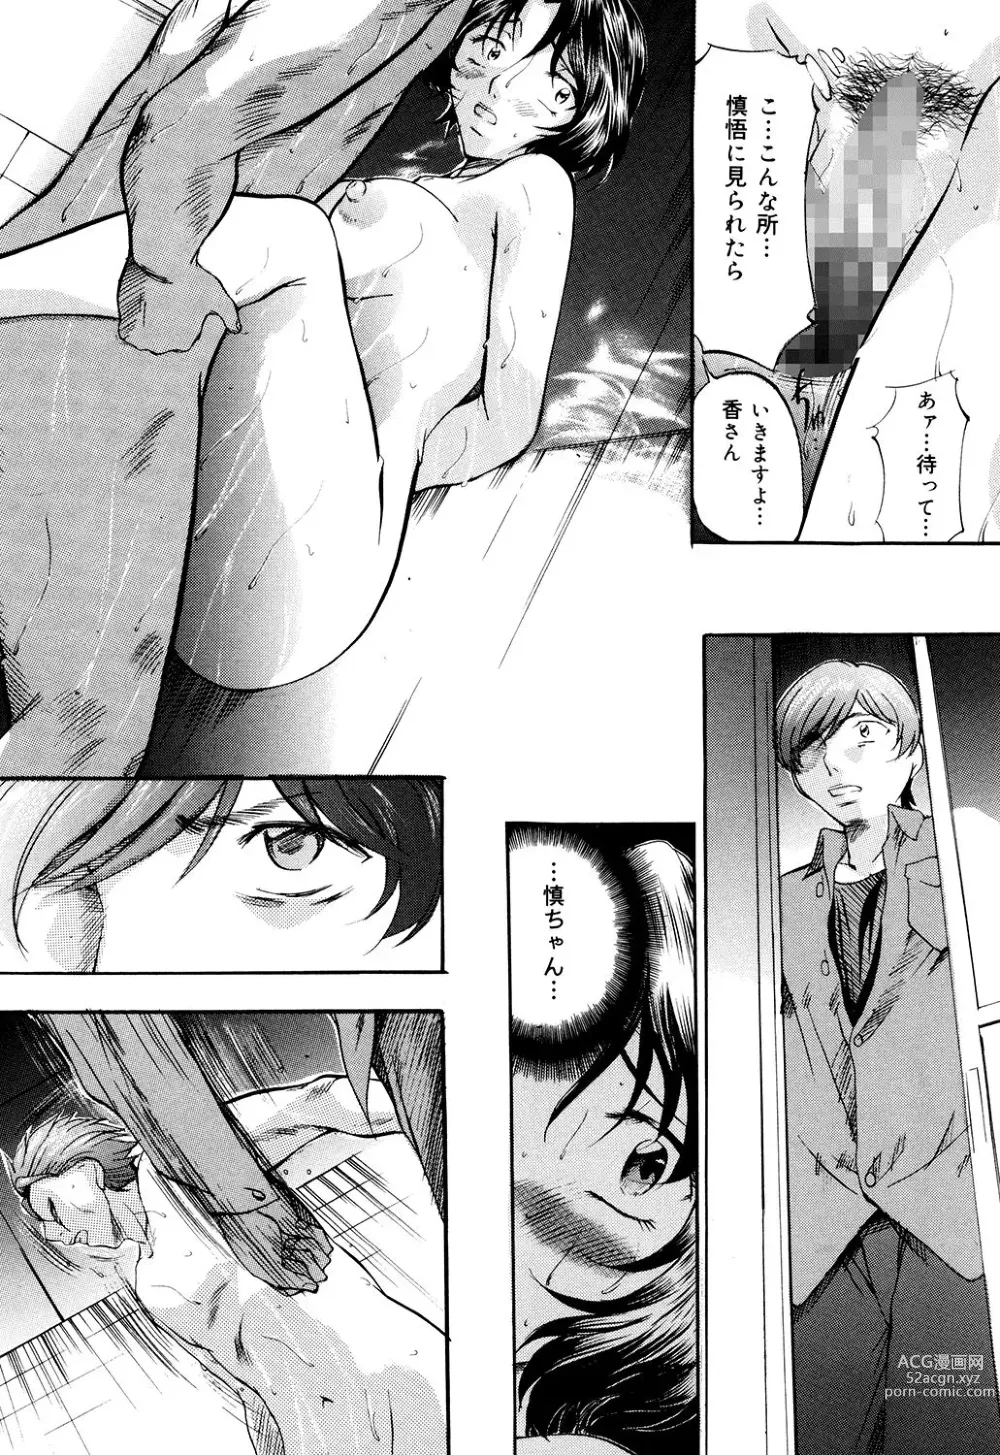 Page 14 of manga Daen Boshi